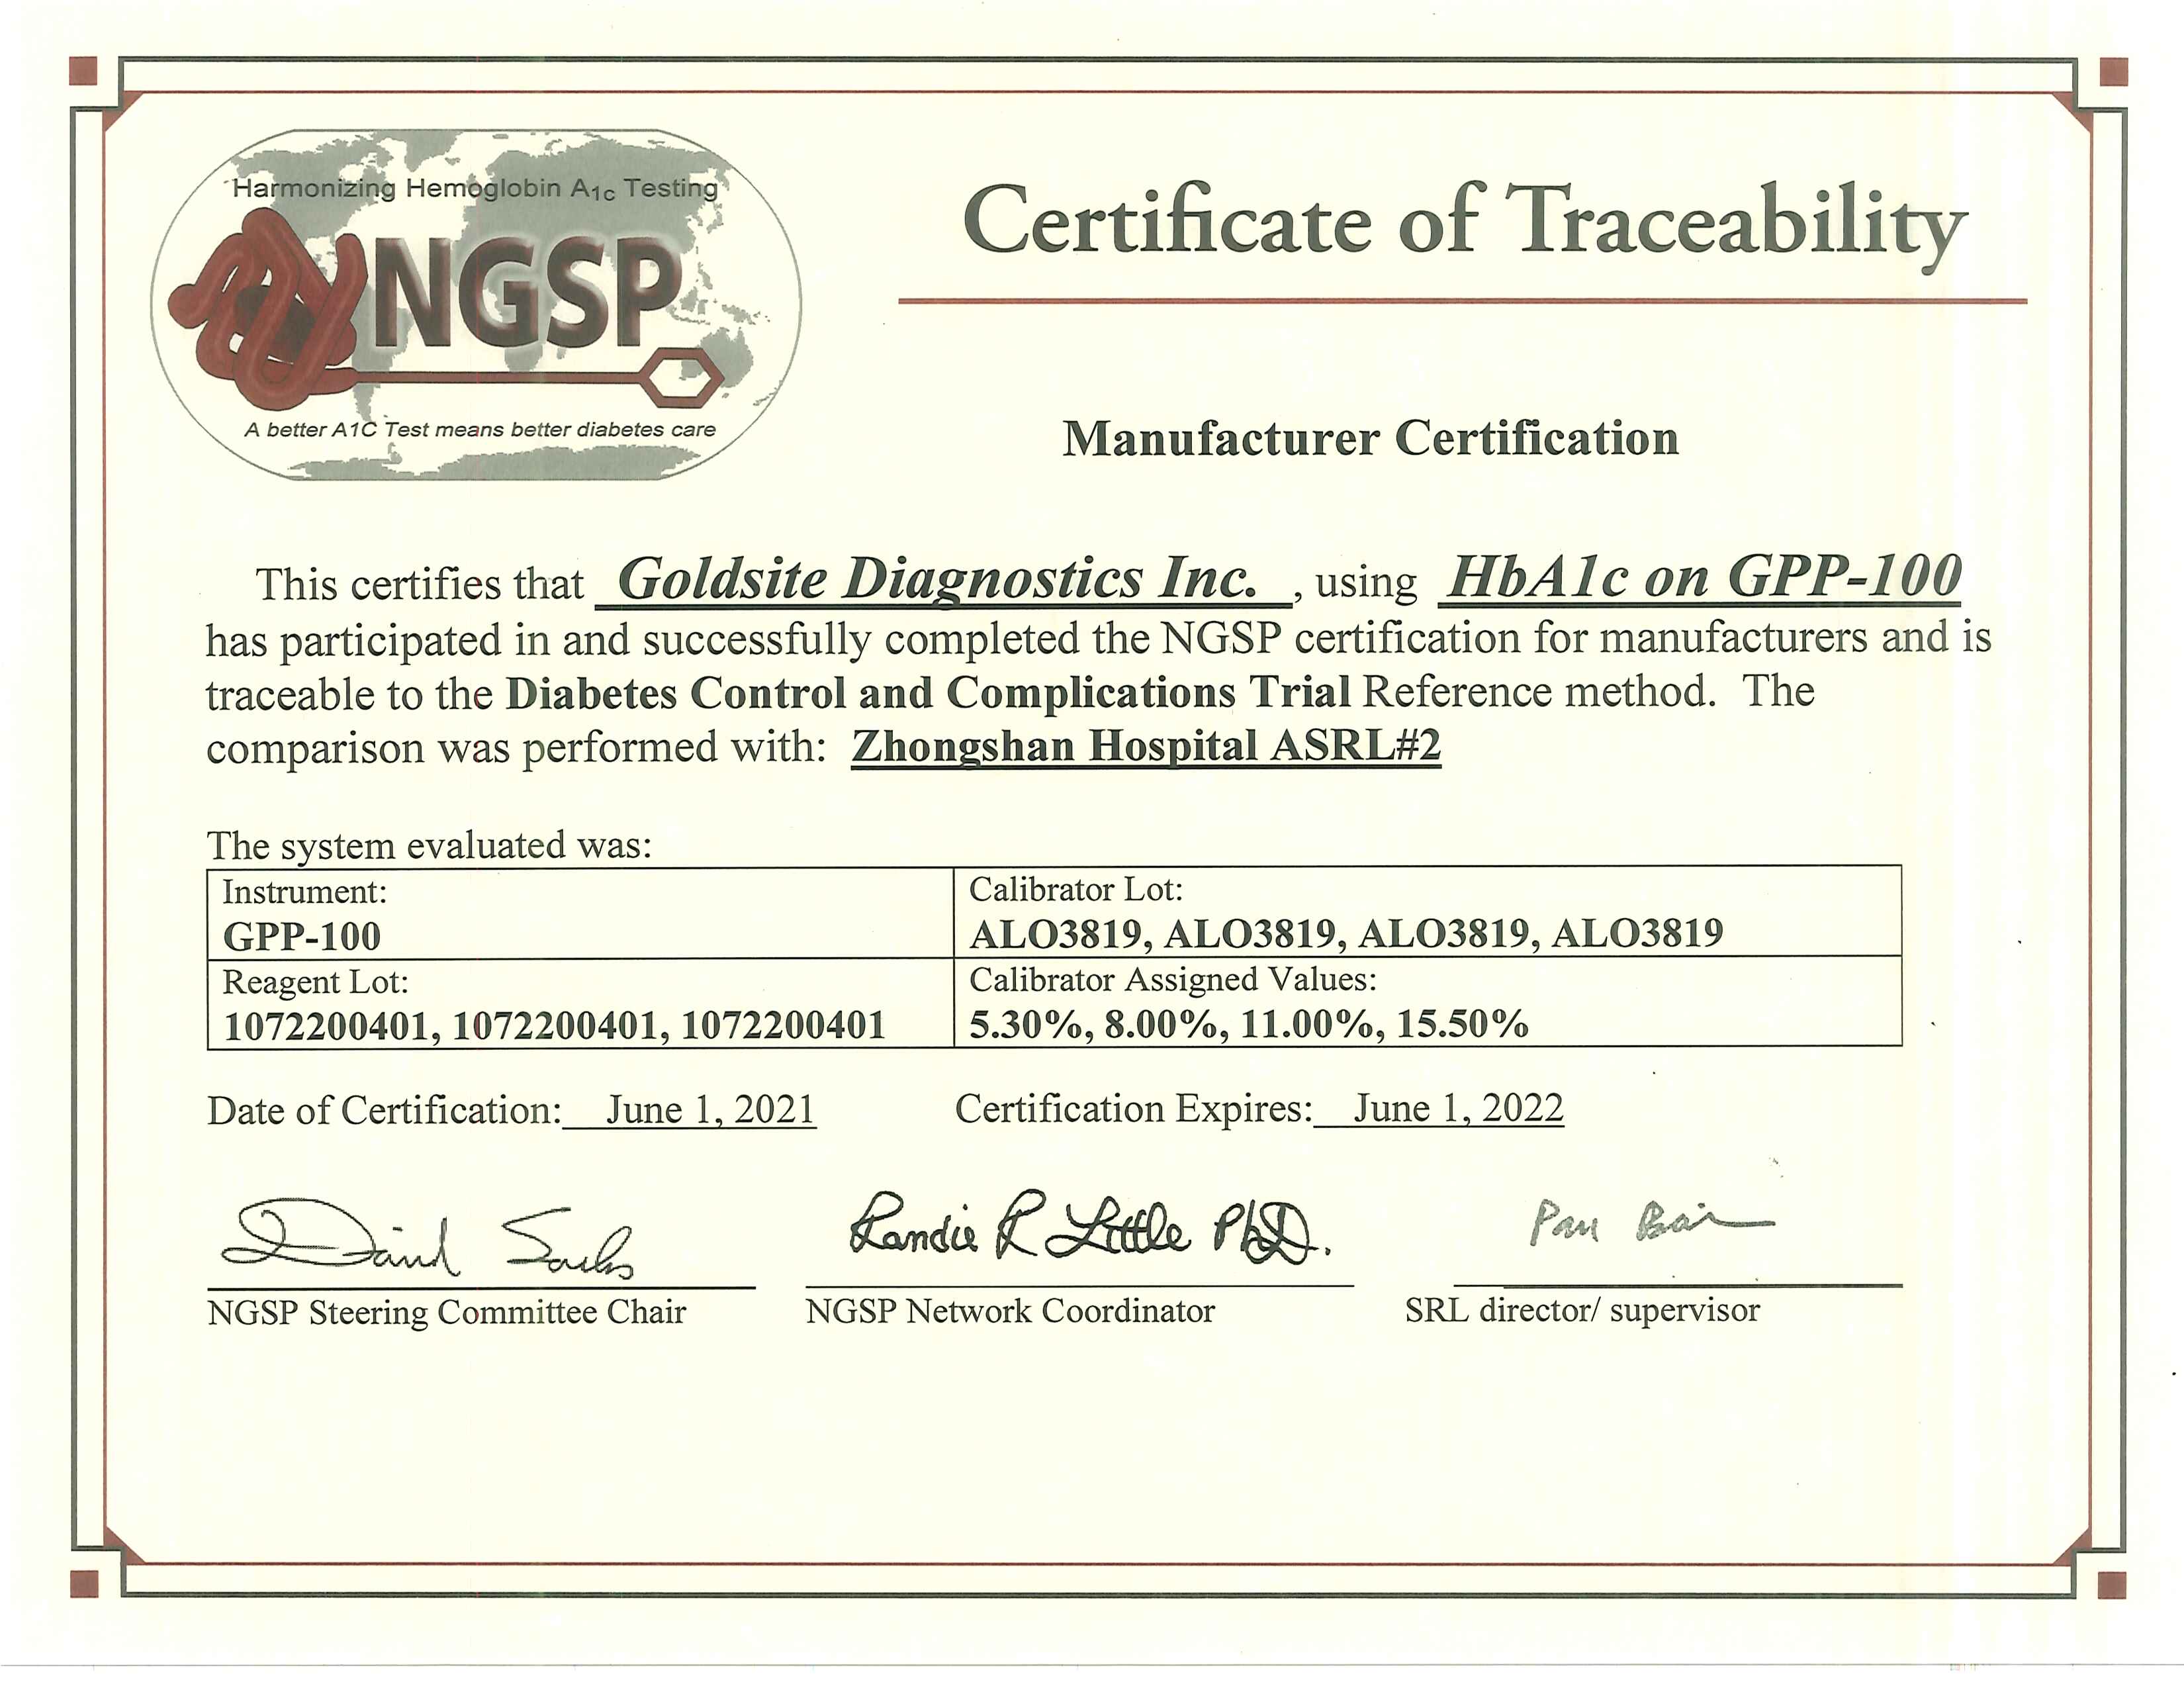 NGSP 证书 Hba1c auf GPP-100 2021.6.12022.6.1